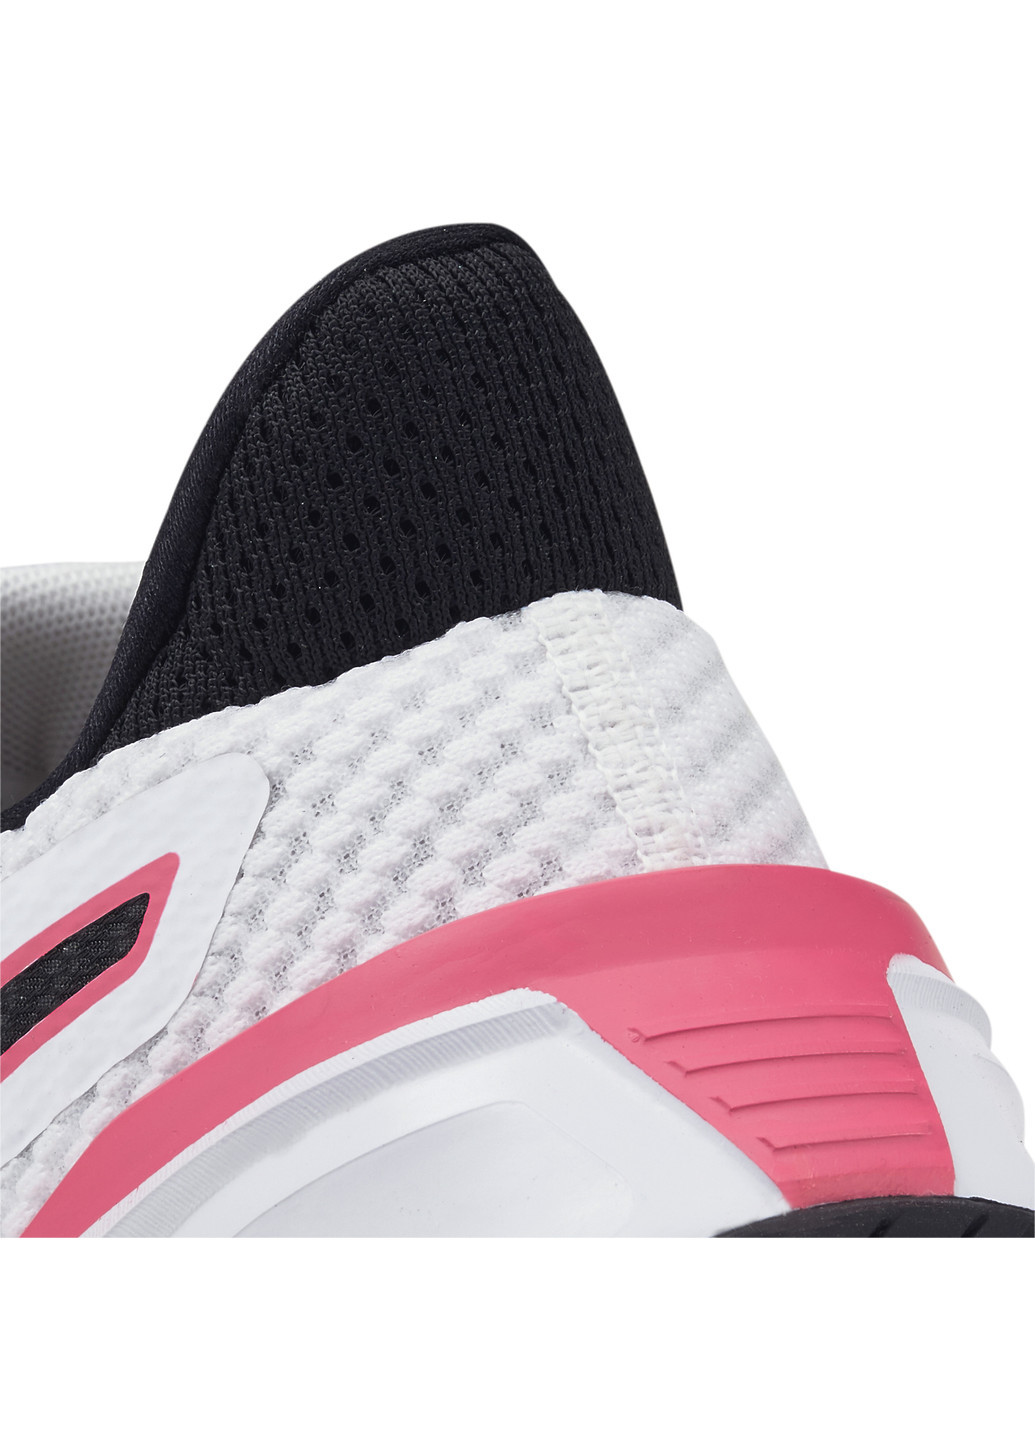 Белые всесезонные кроссовки pwrframe women's training shoes Puma